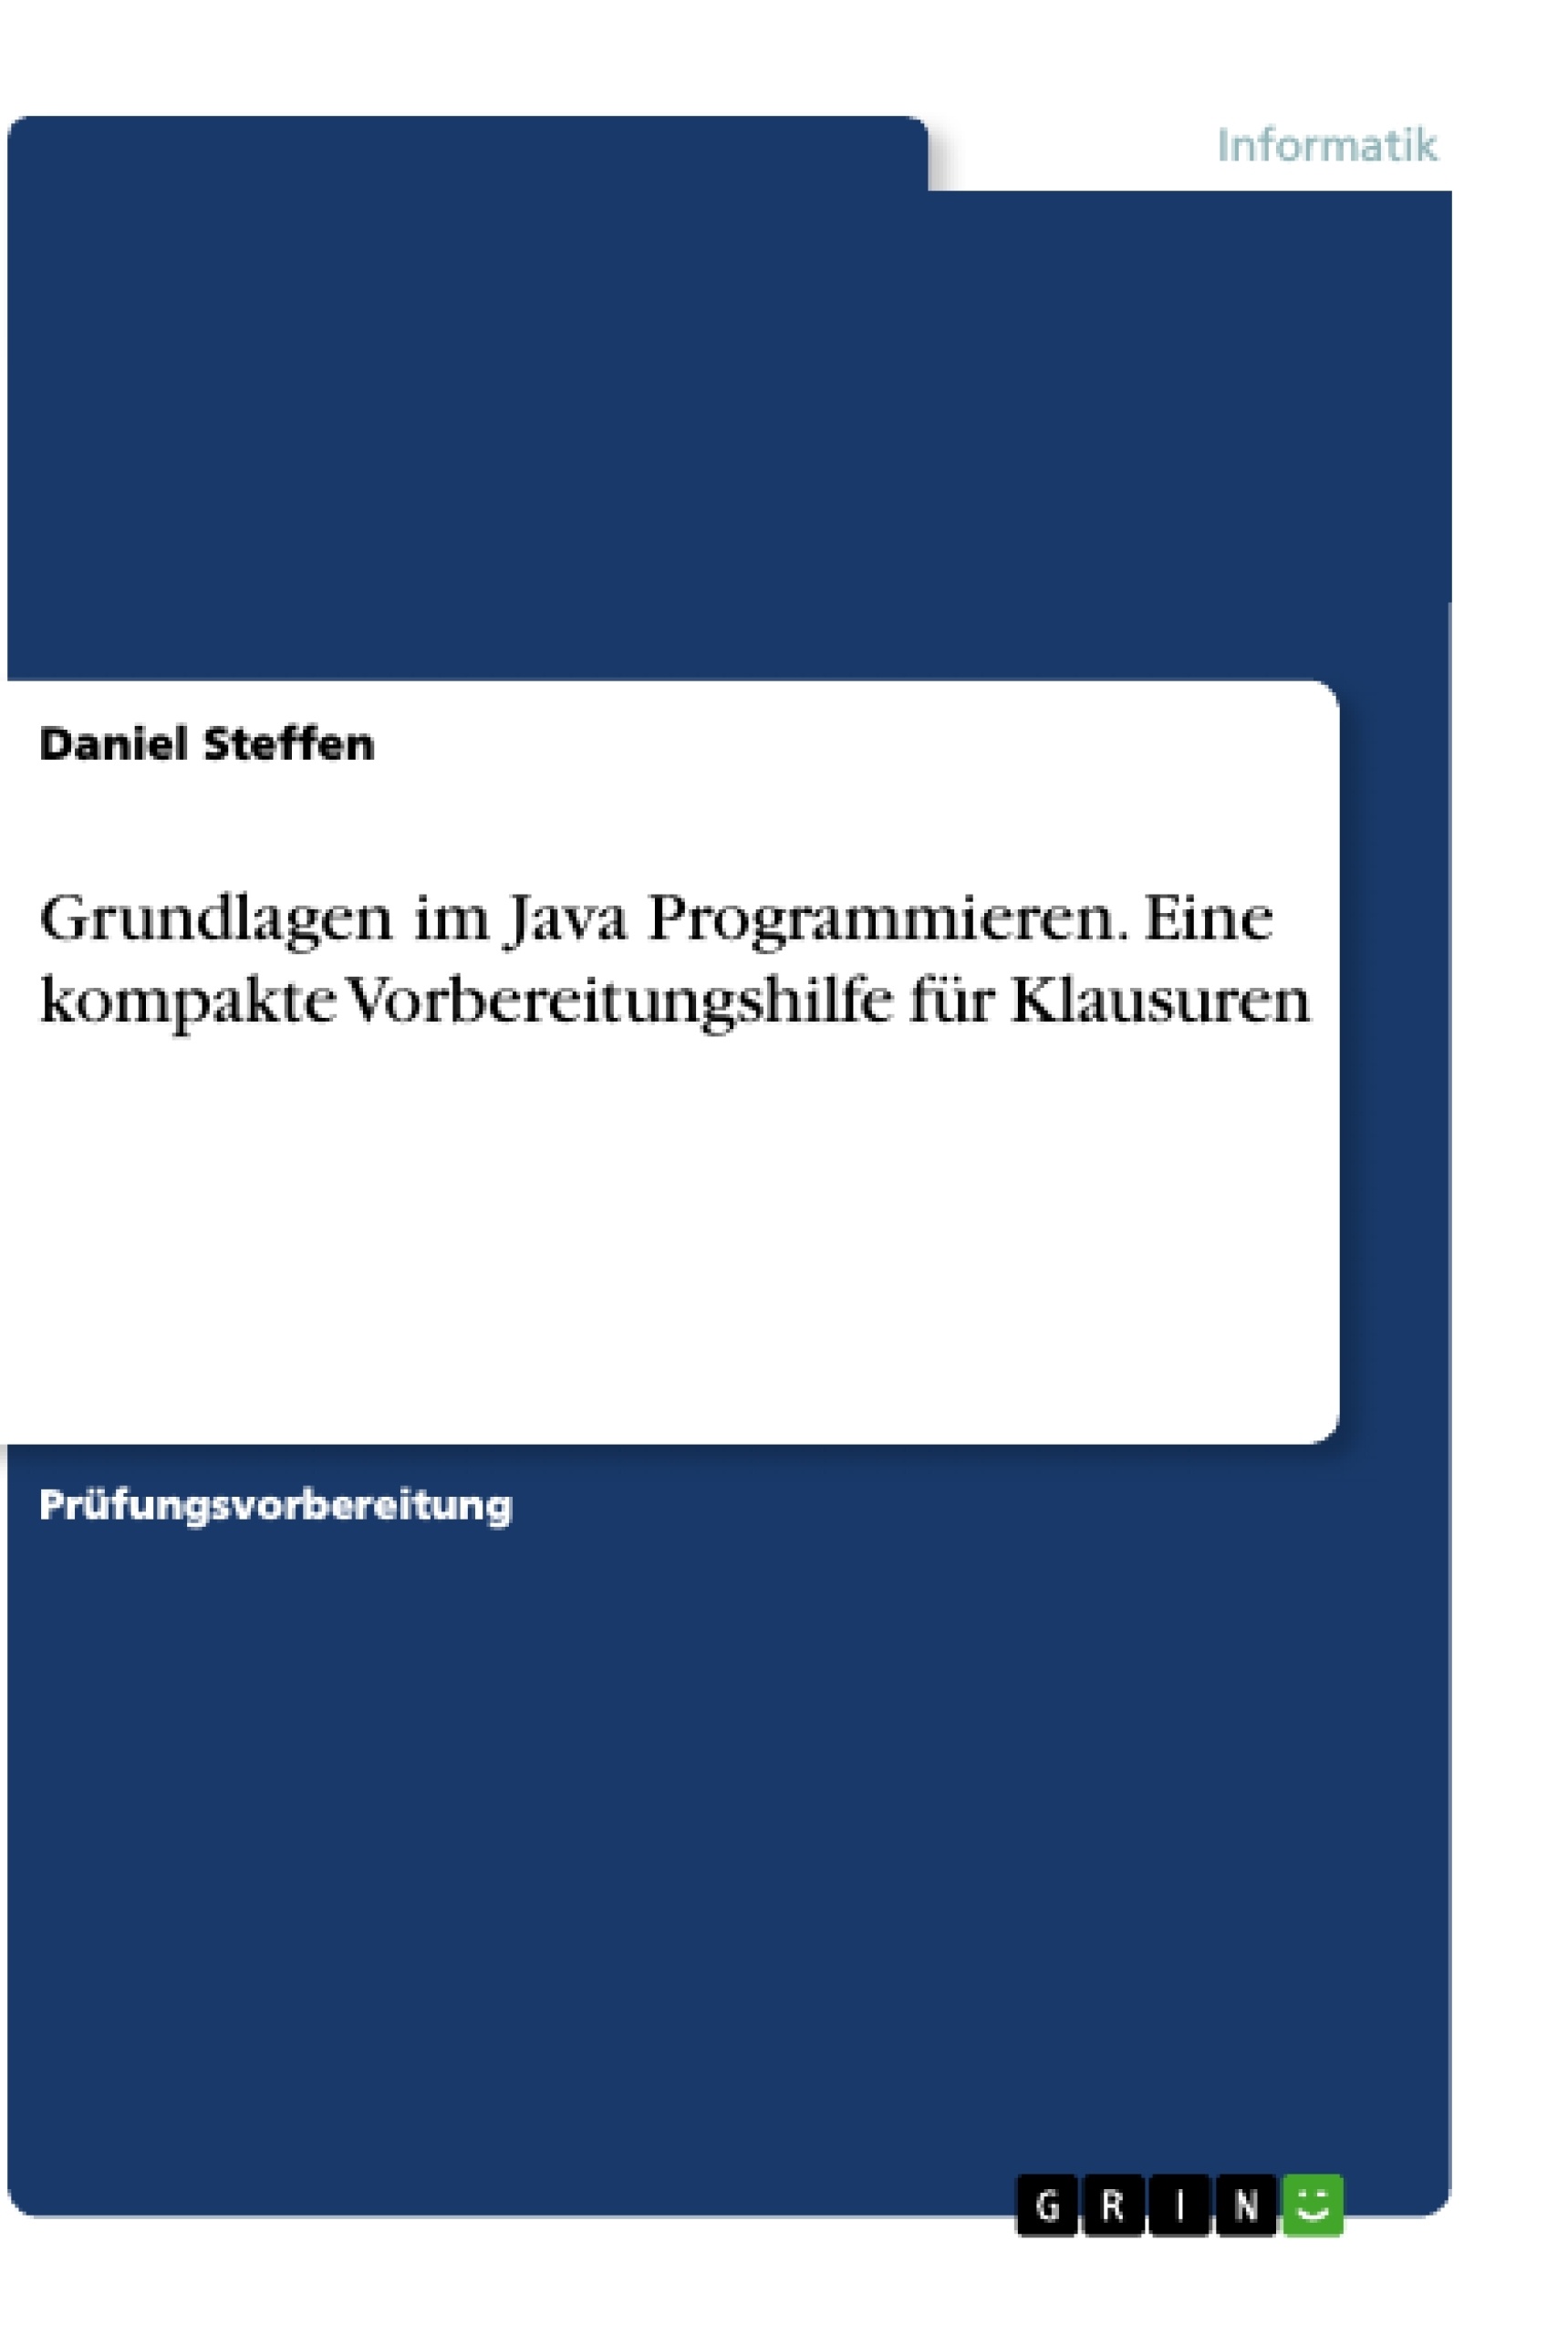 Title: Grundlagen im Java Programmieren. Eine kompakte Vorbereitungshilfe für Klausuren